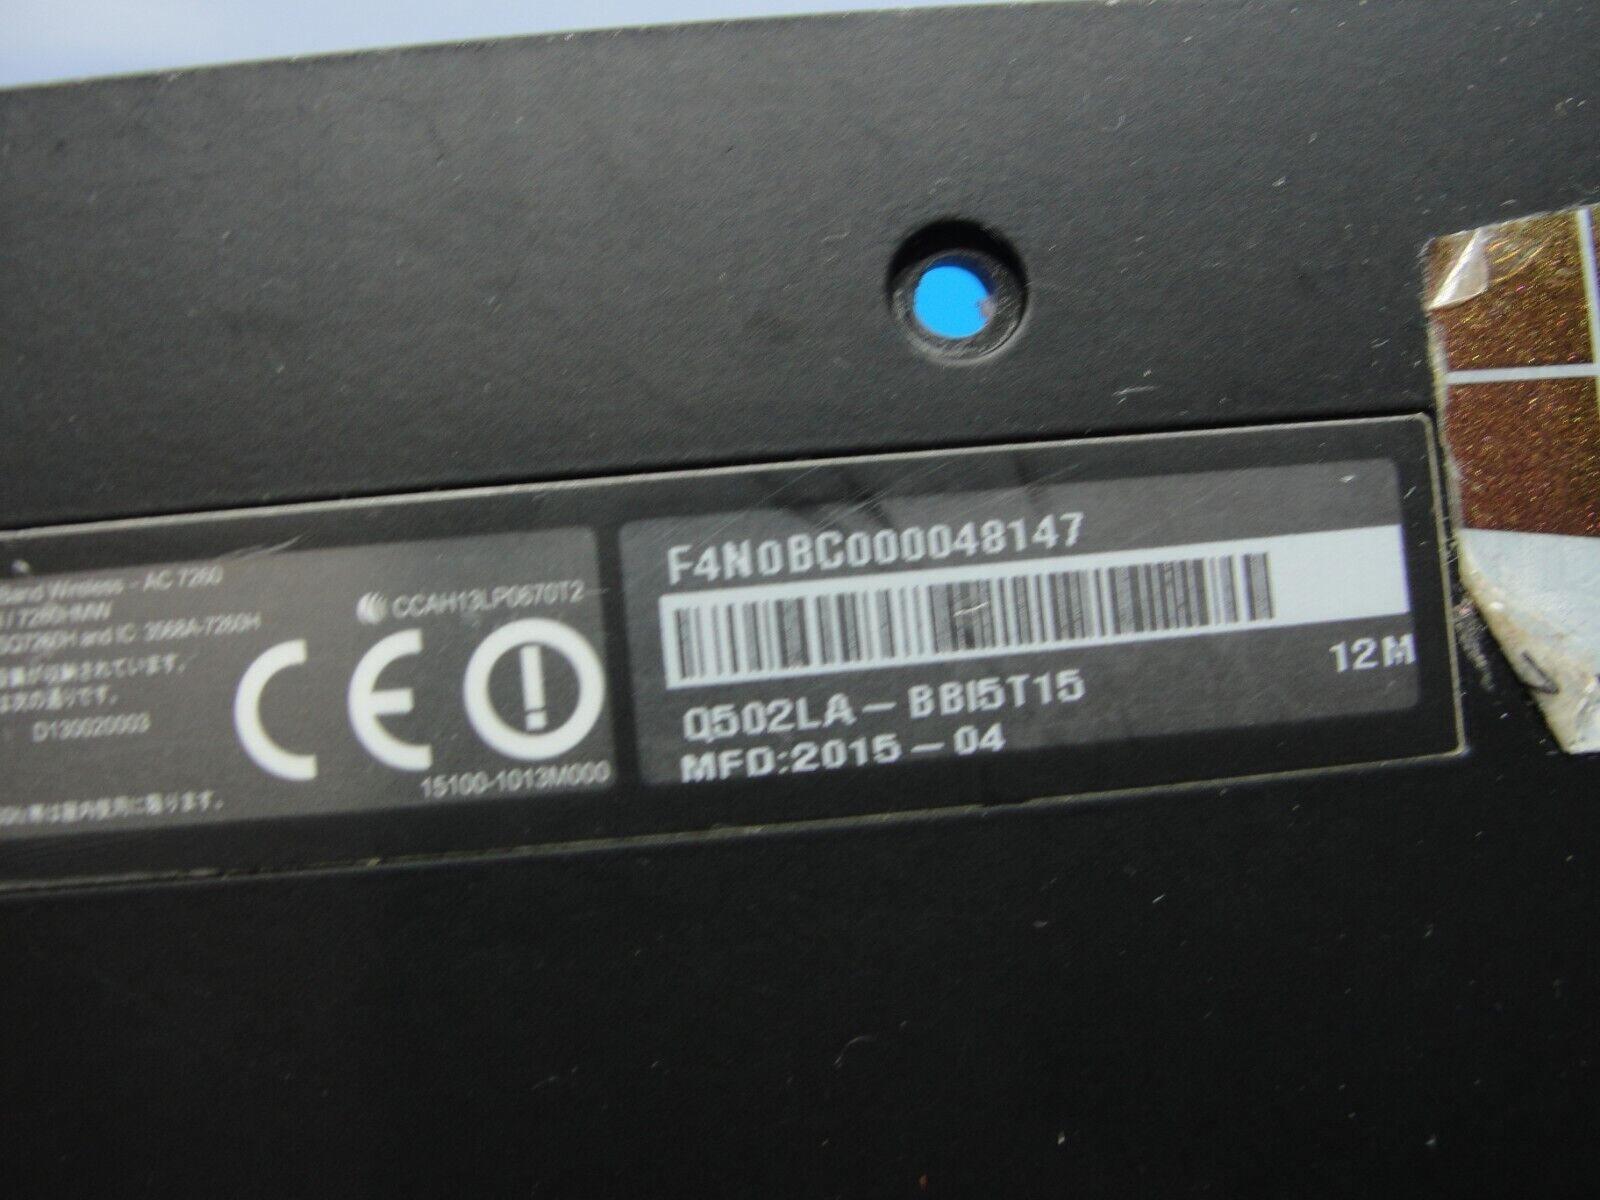 Asus Q502LA-BBI5T15.6